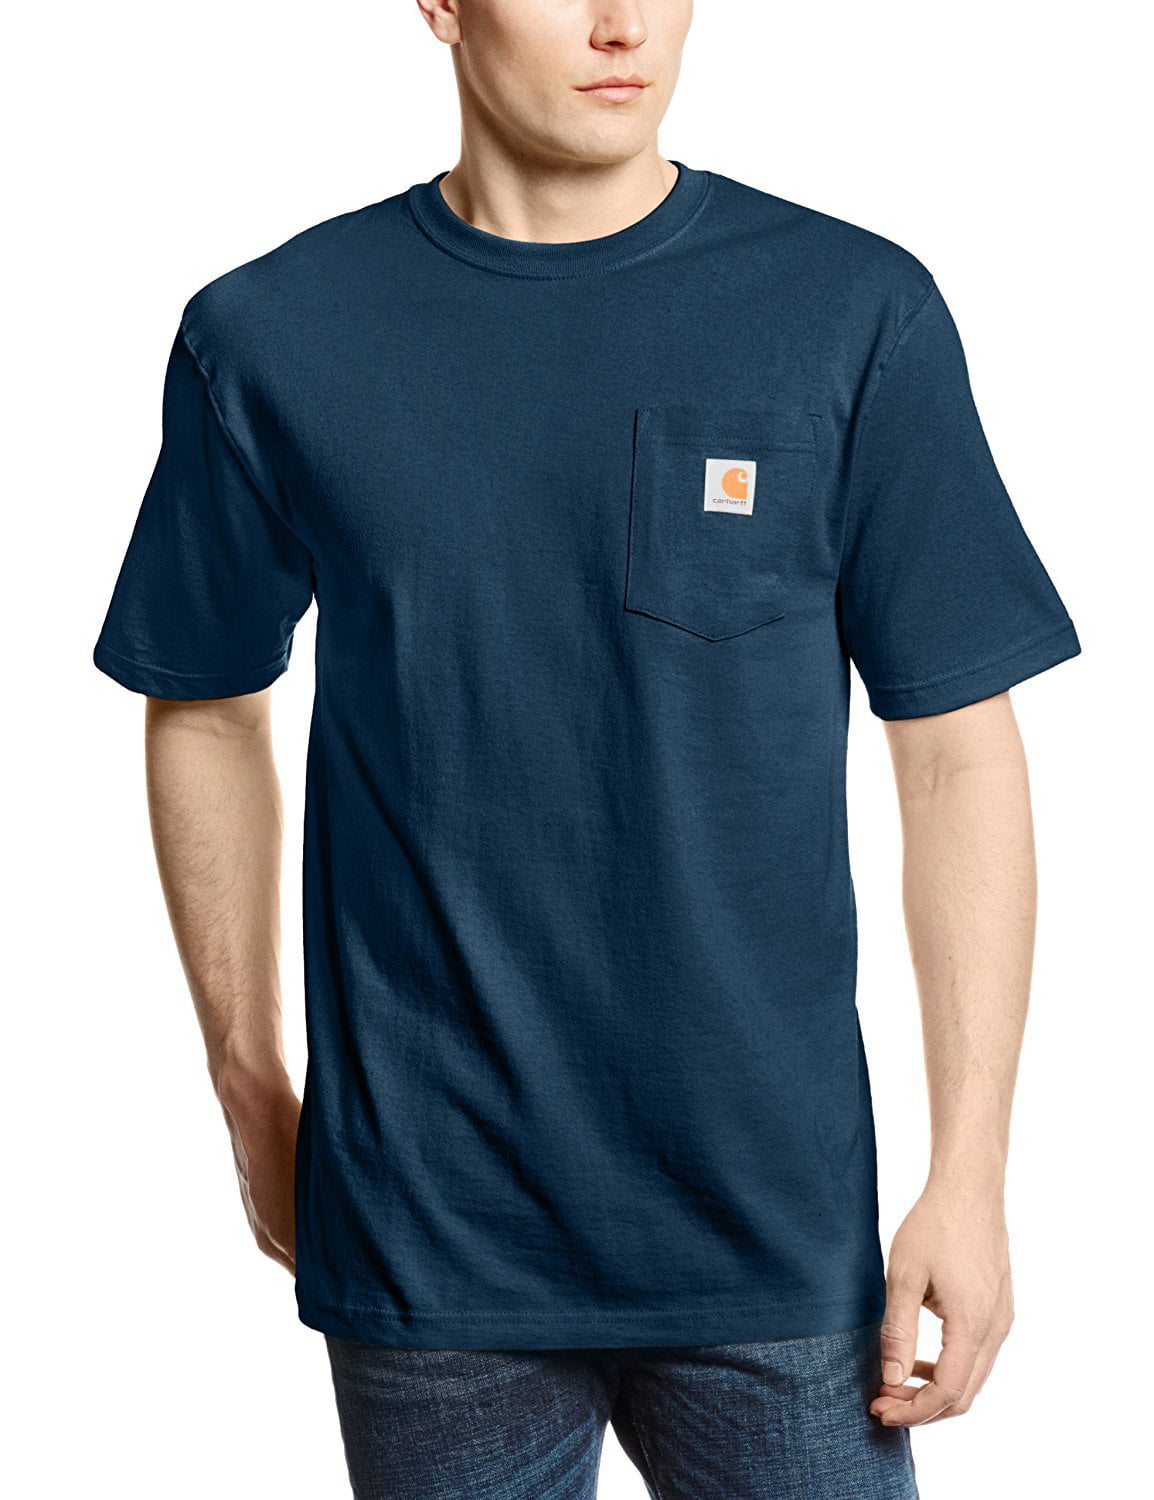 Carhartt - Carhartt Men's Workwear Pocket SS T Shirt - Walmart.com ...